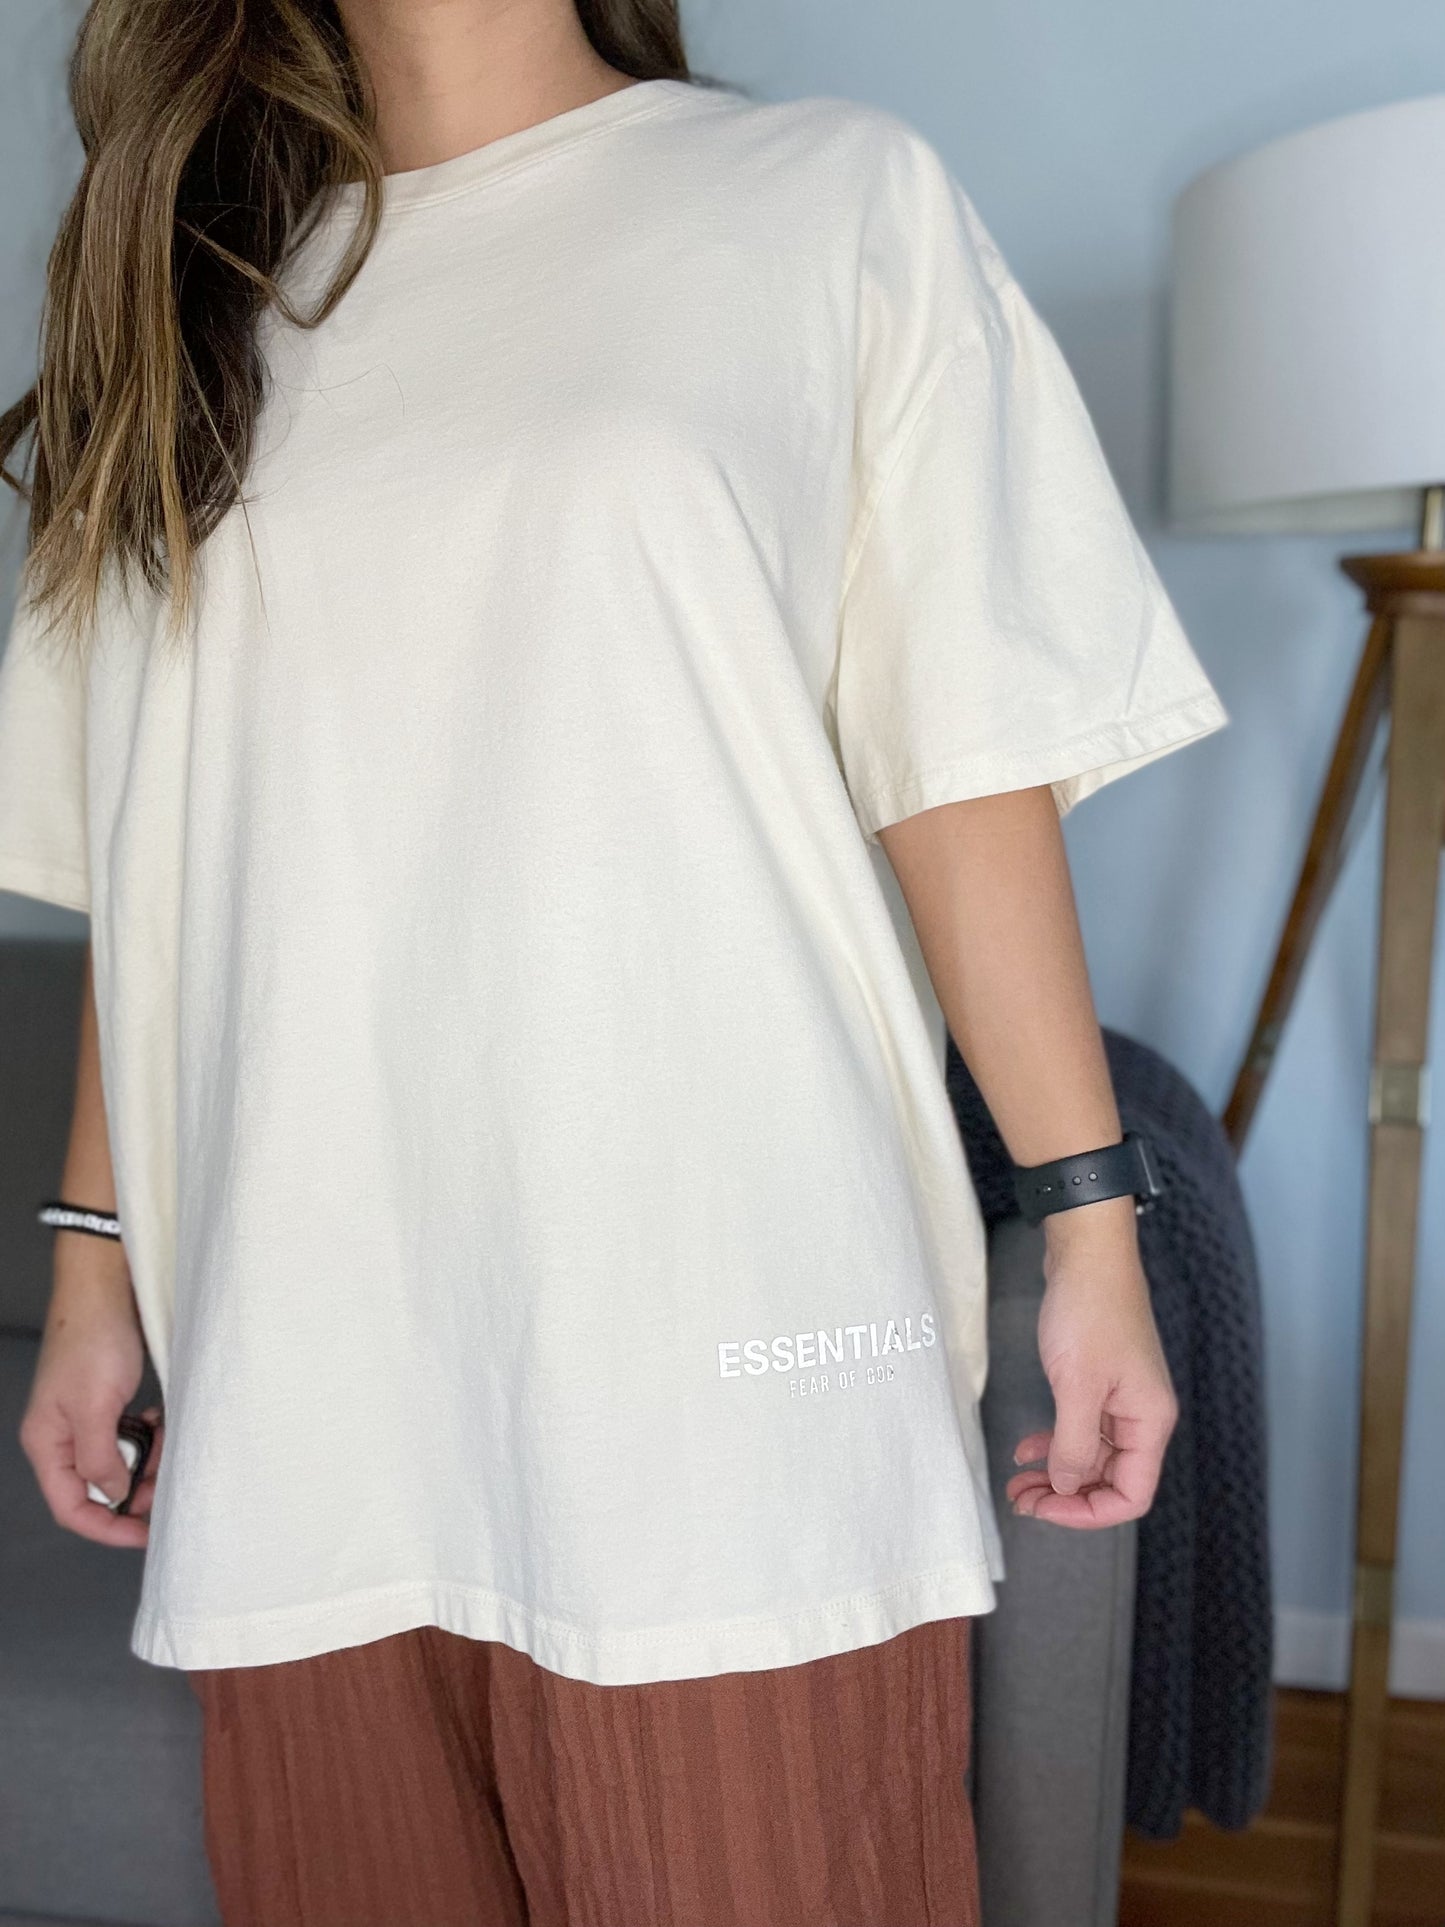 Essentials Fear of God Cream Short Sleeve Oversize T-Shirt Men's Size Medium